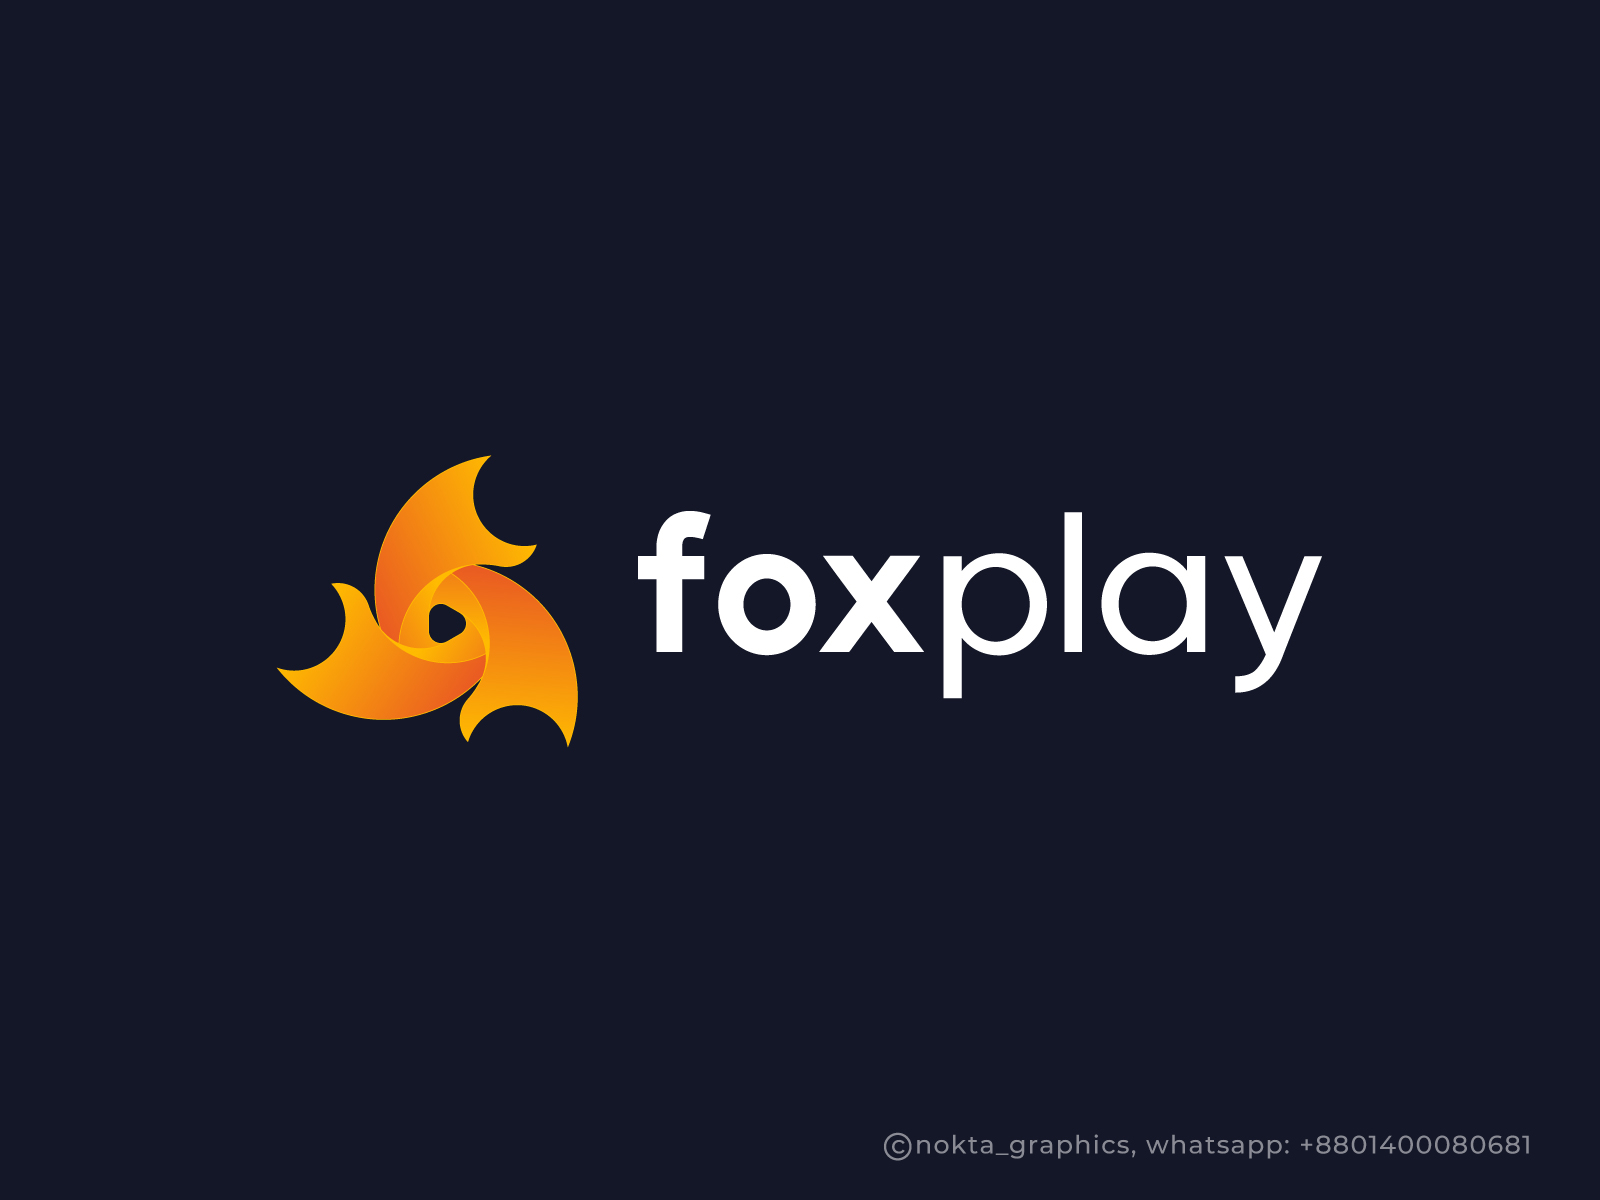 Foxplay